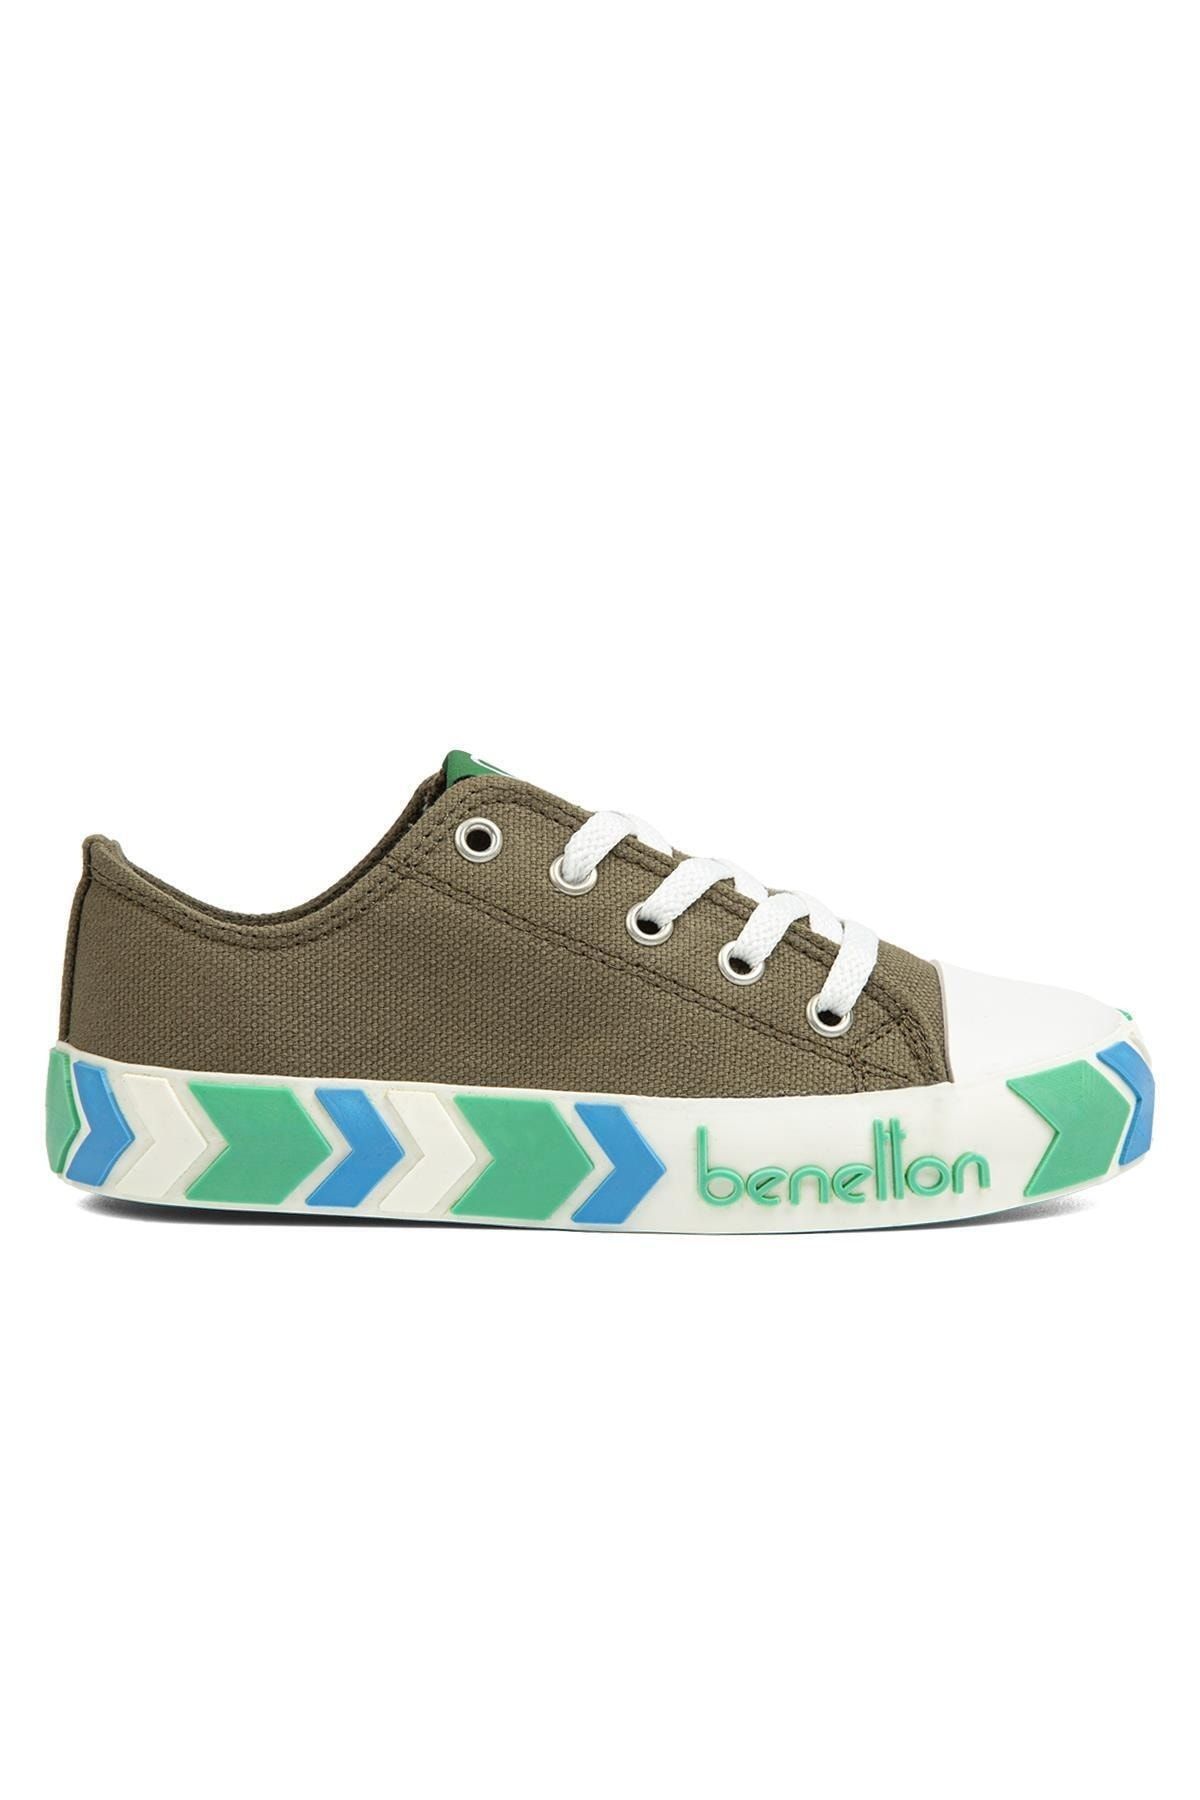 Benetton ® | BN-90633- Yesil - Çocuk Spor Ayakkabı